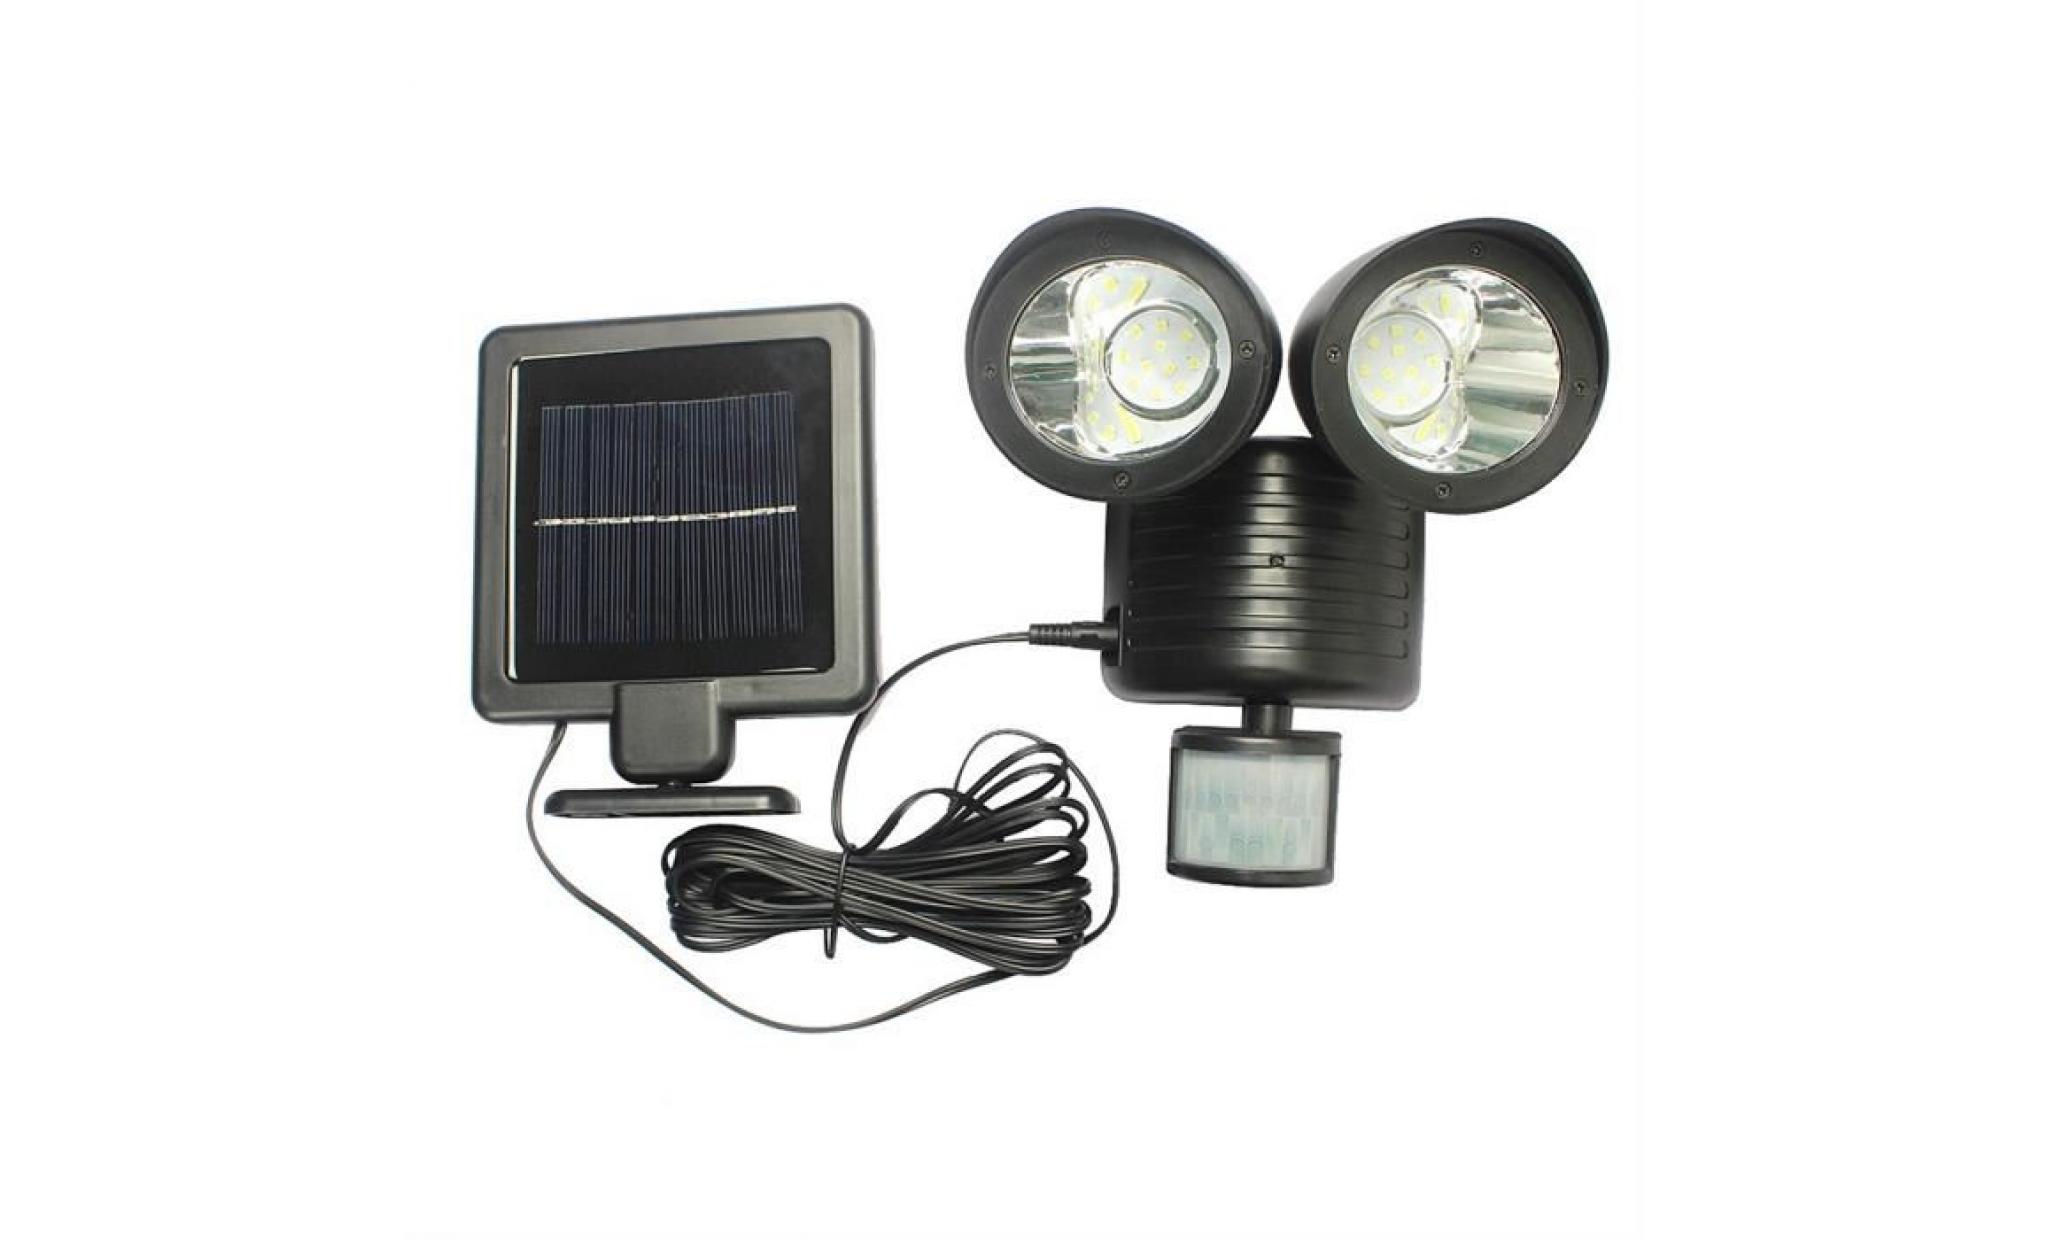 neÜfu 22led lampe applique rechargeable double solaire energie capteur de mouvement sécurité nuit garde jardin